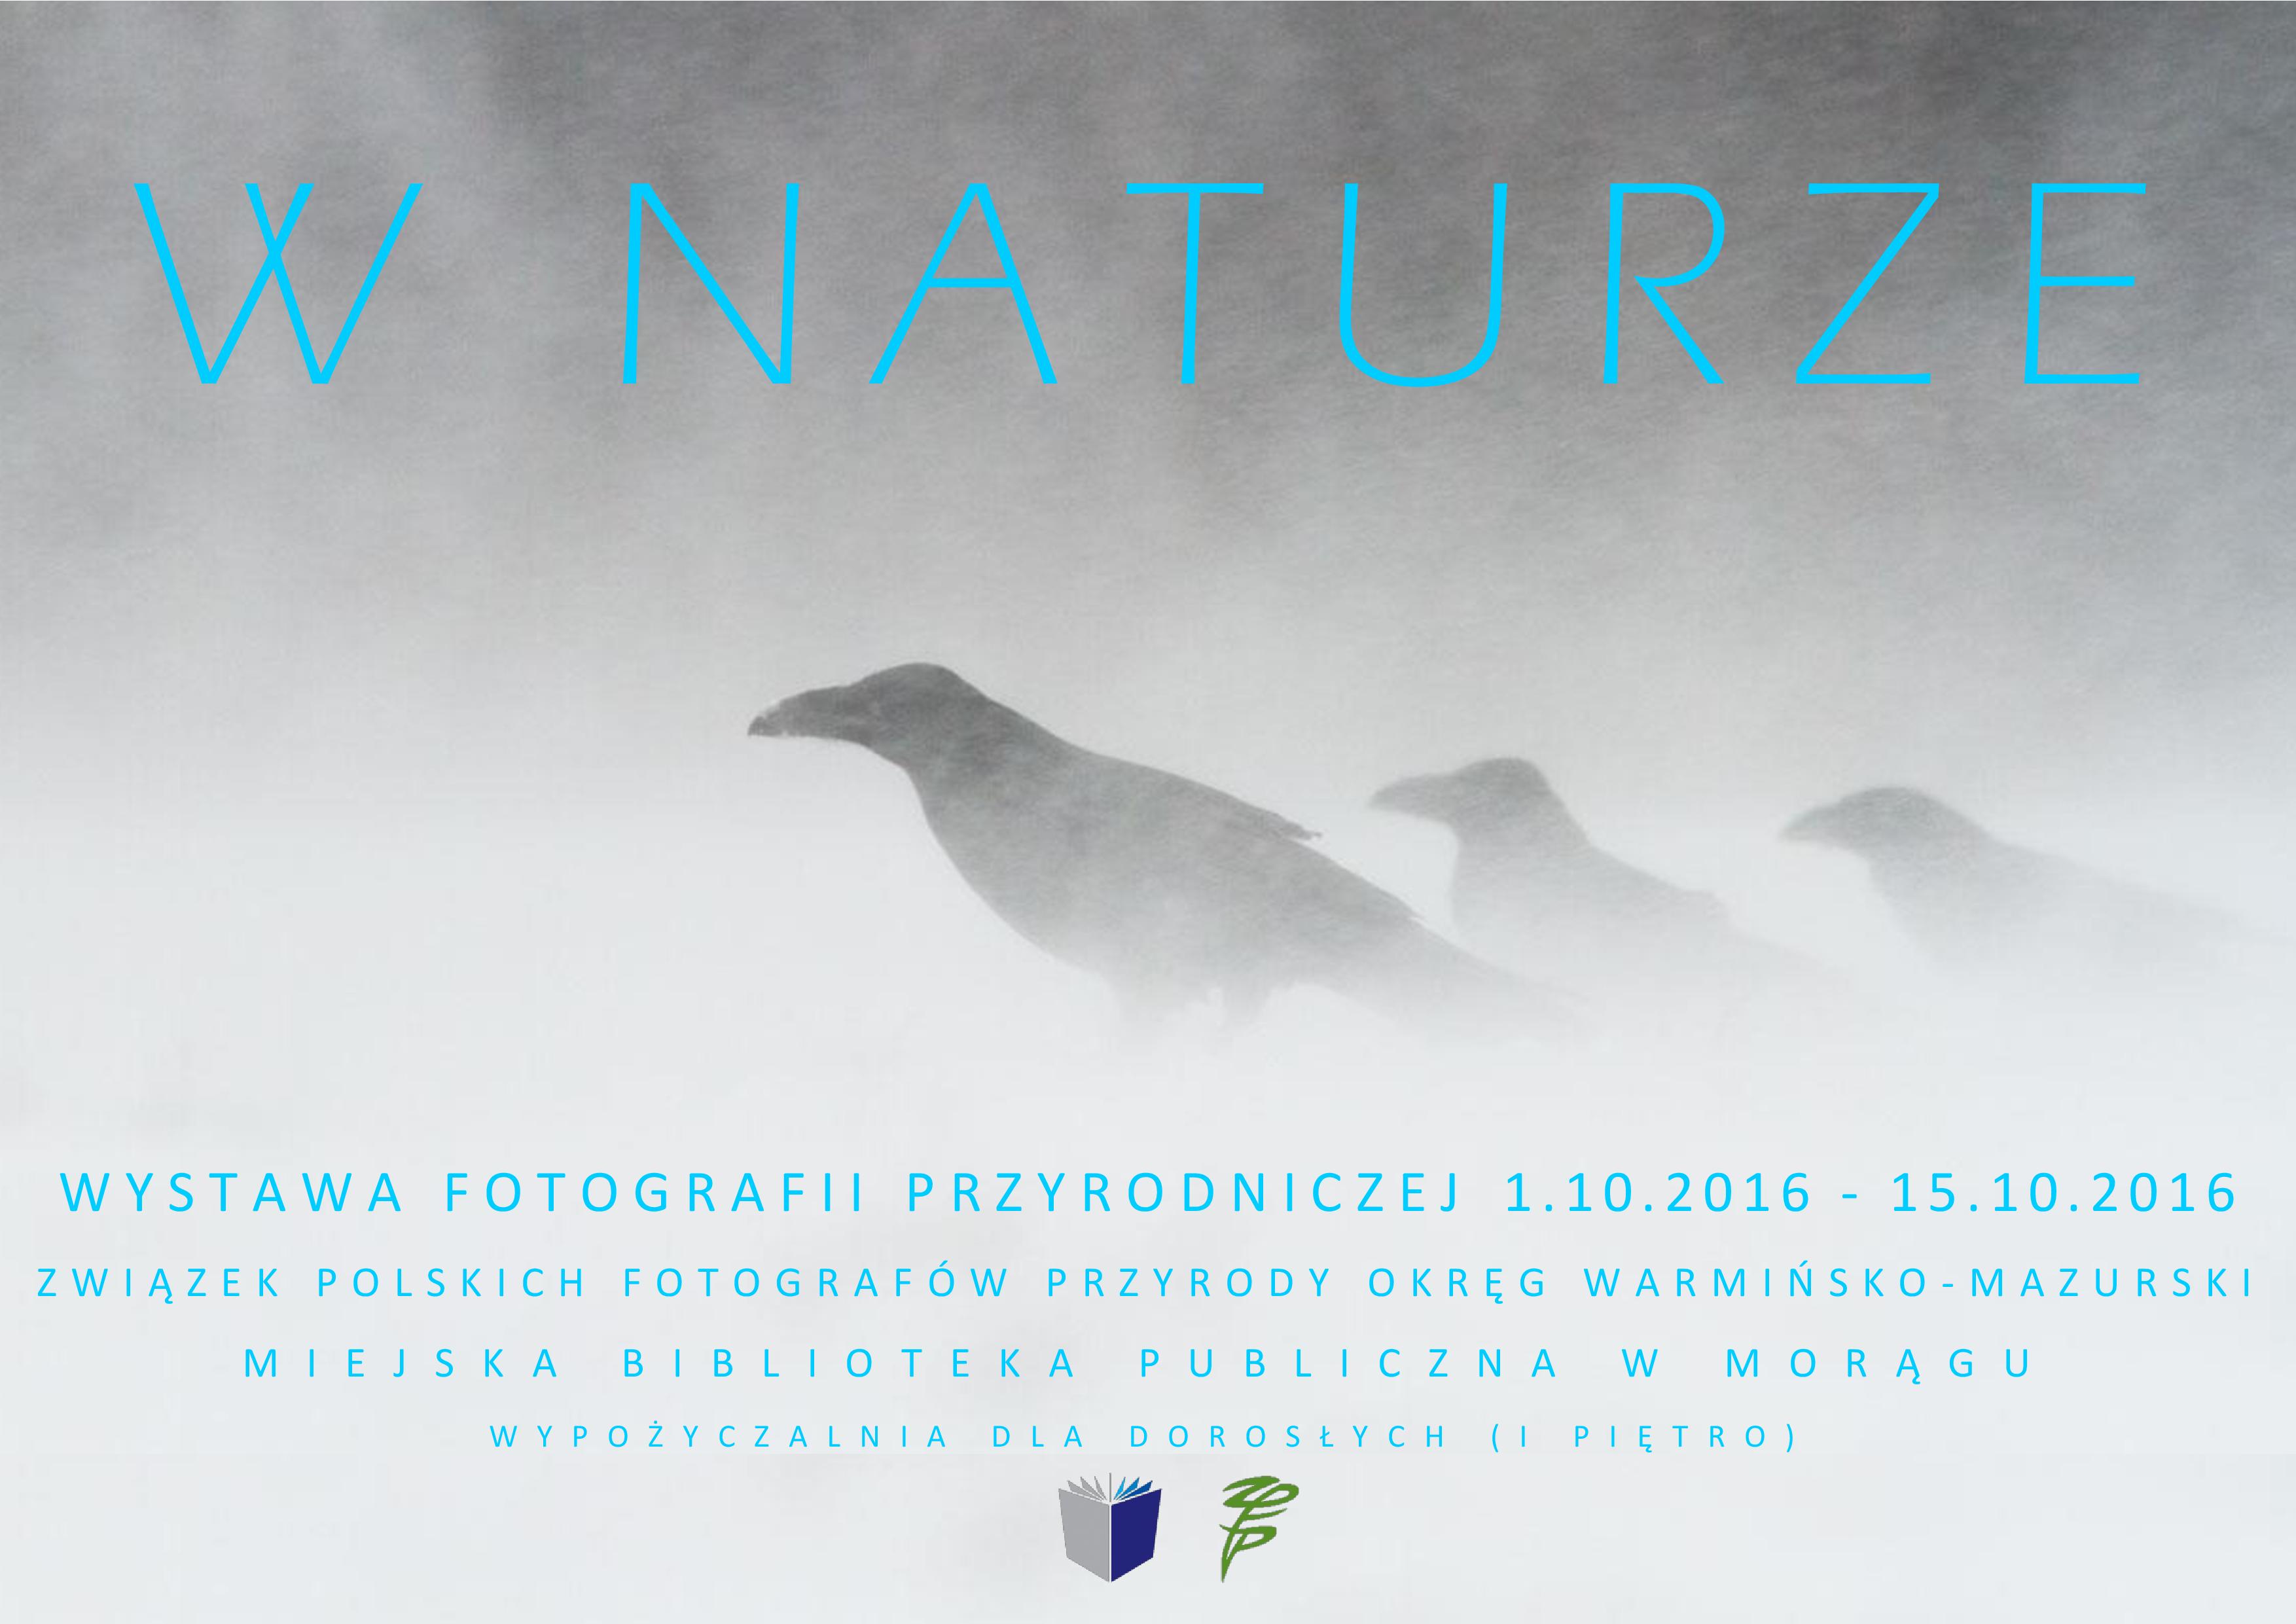 Wystawa fotografii przyrodniczej - plakat